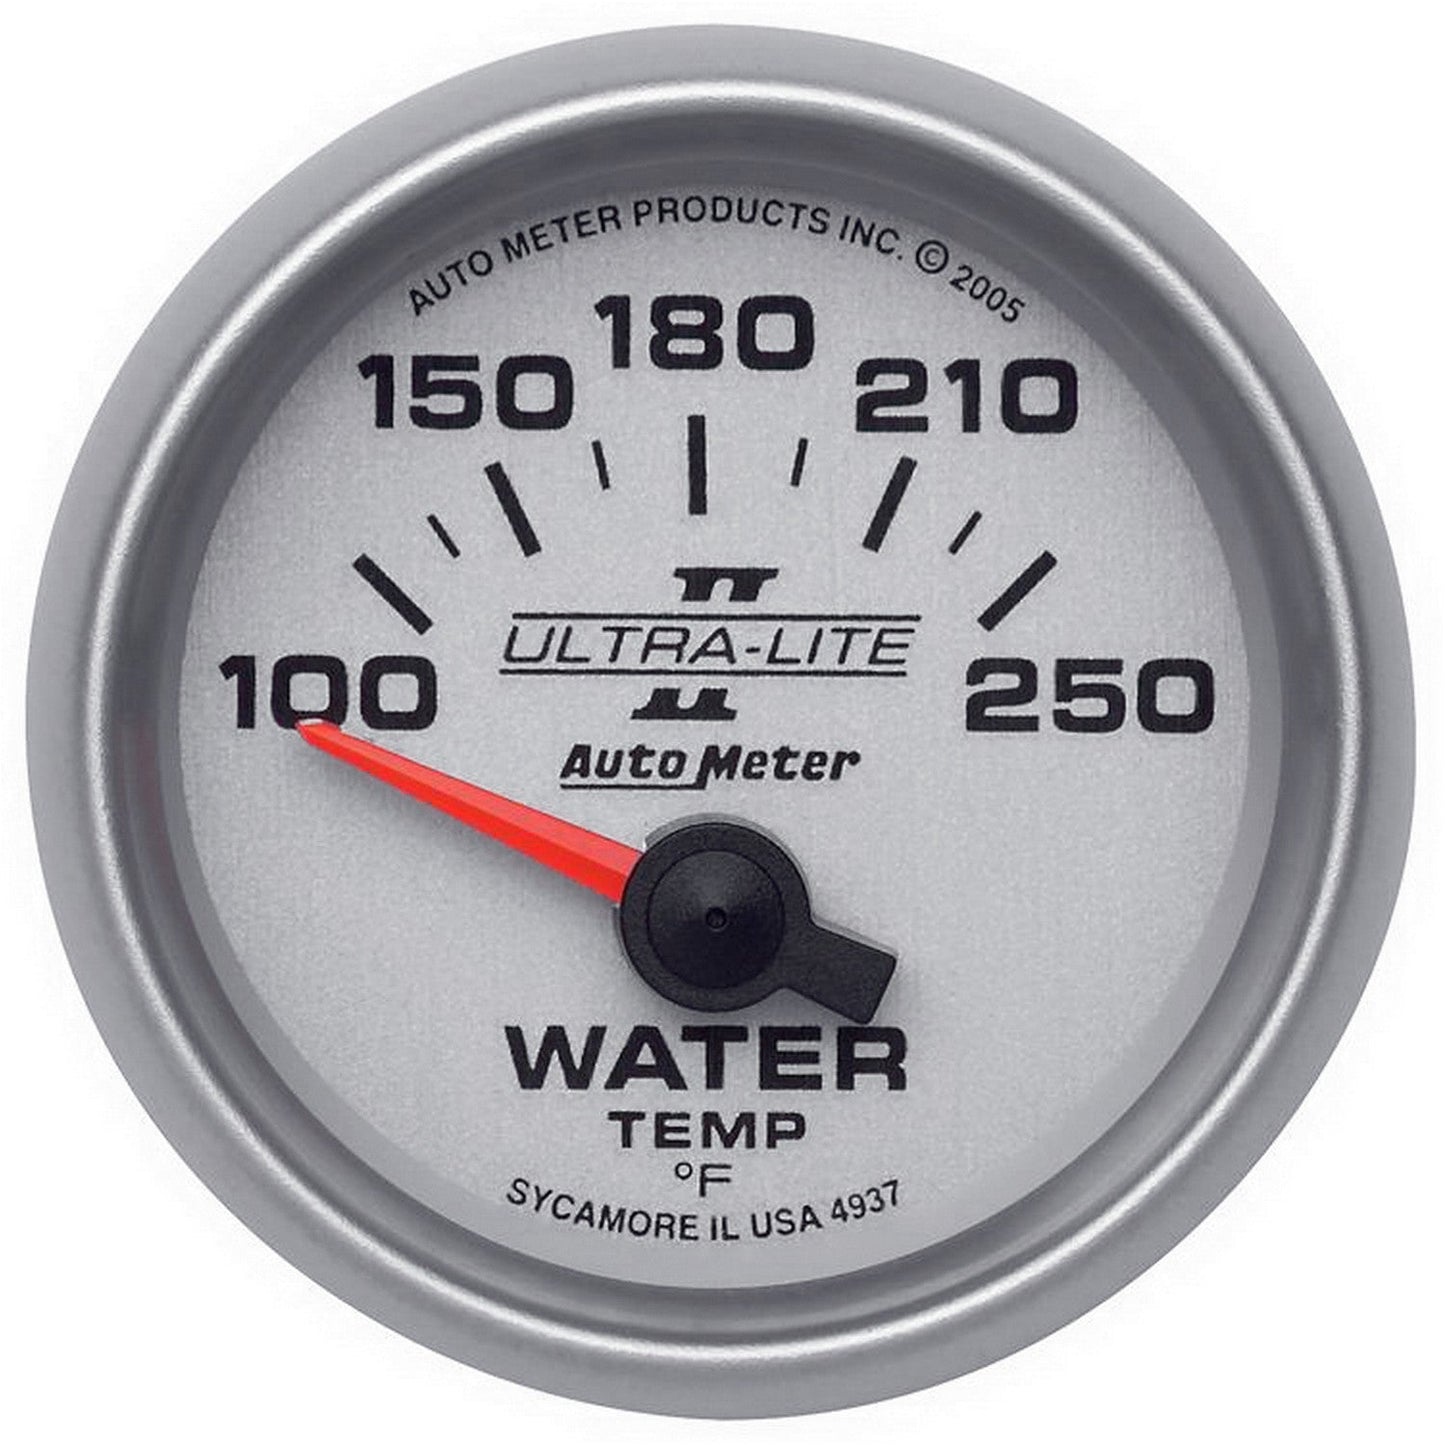 AutoMeter - 2-1/16" TEMPERATURA DA ÁGUA, 100-250 °F, AIR-CORE, ULTRA-LITE II (4937) 